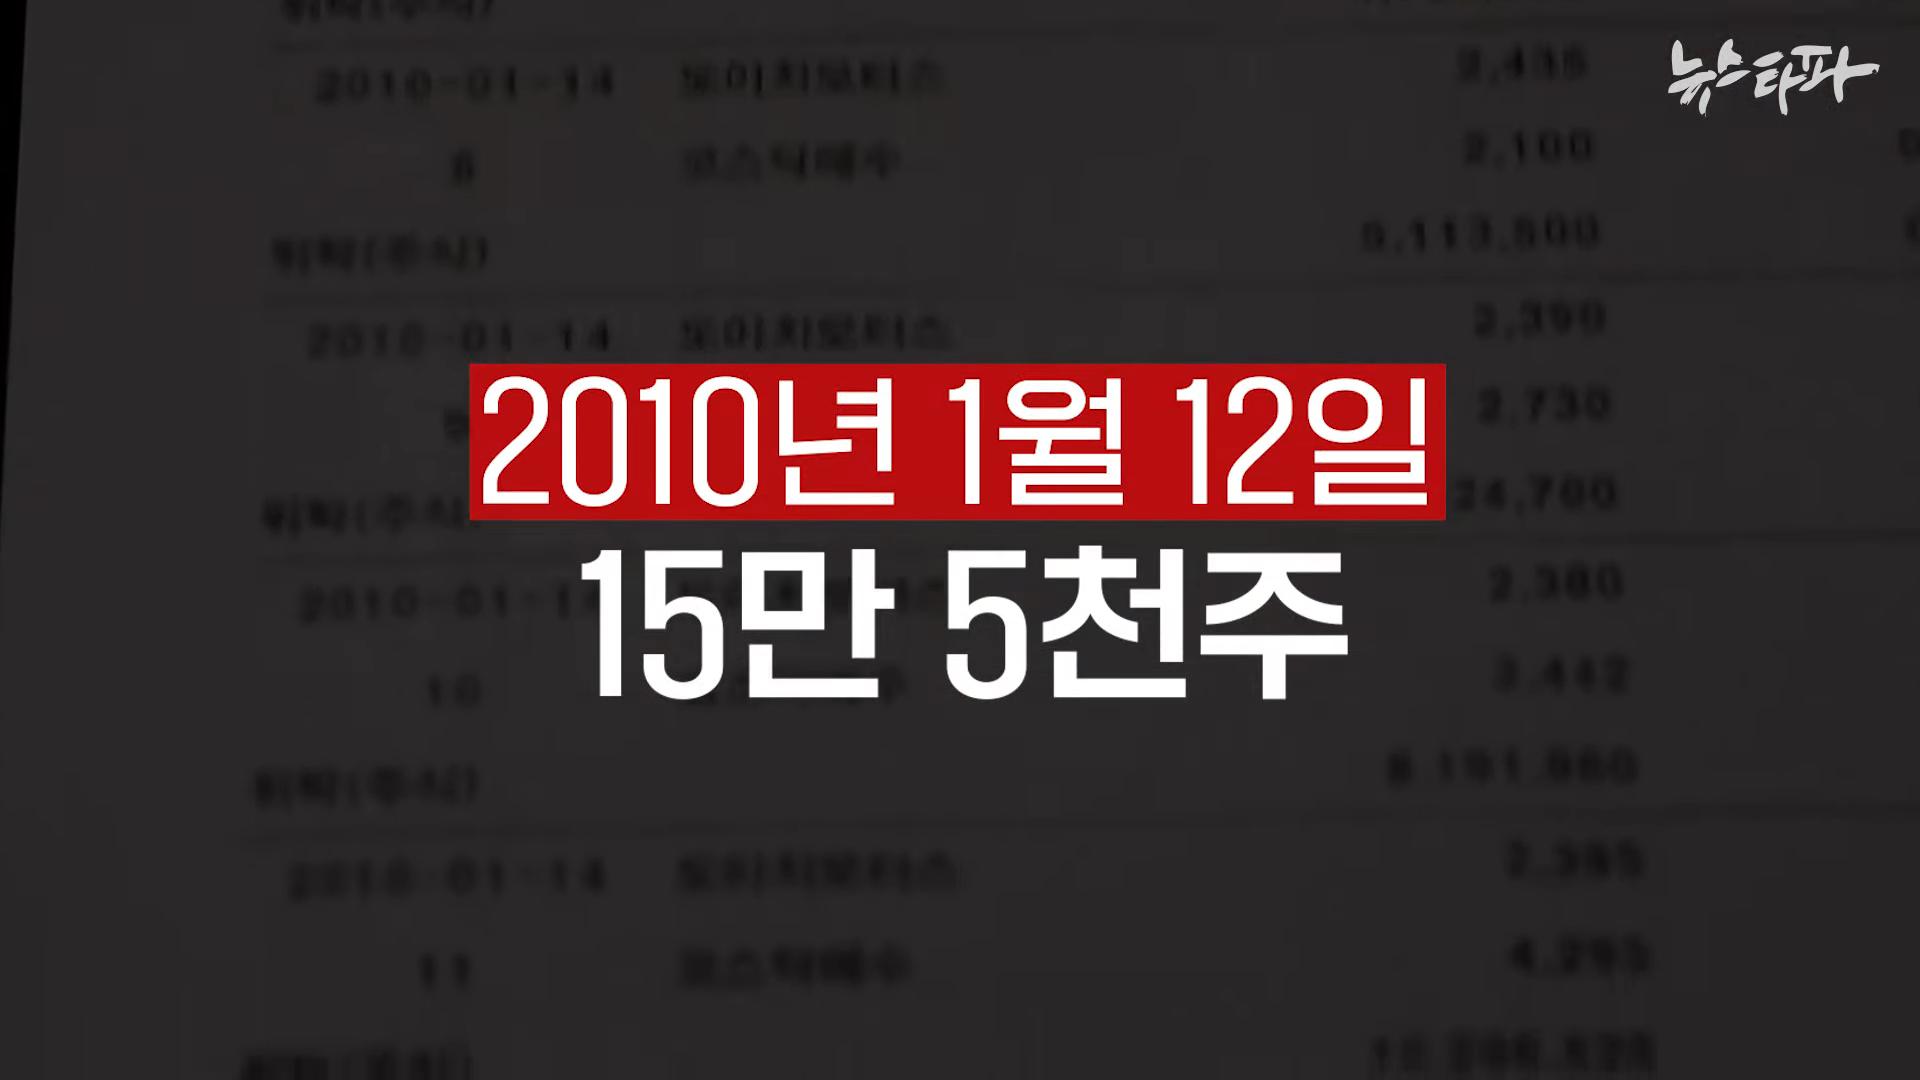 김건희 도이치모터스 녹취록 공개. 대통령 거짓말 드러났다 - 뉴스타파 2-26 screenshot.png.jpg